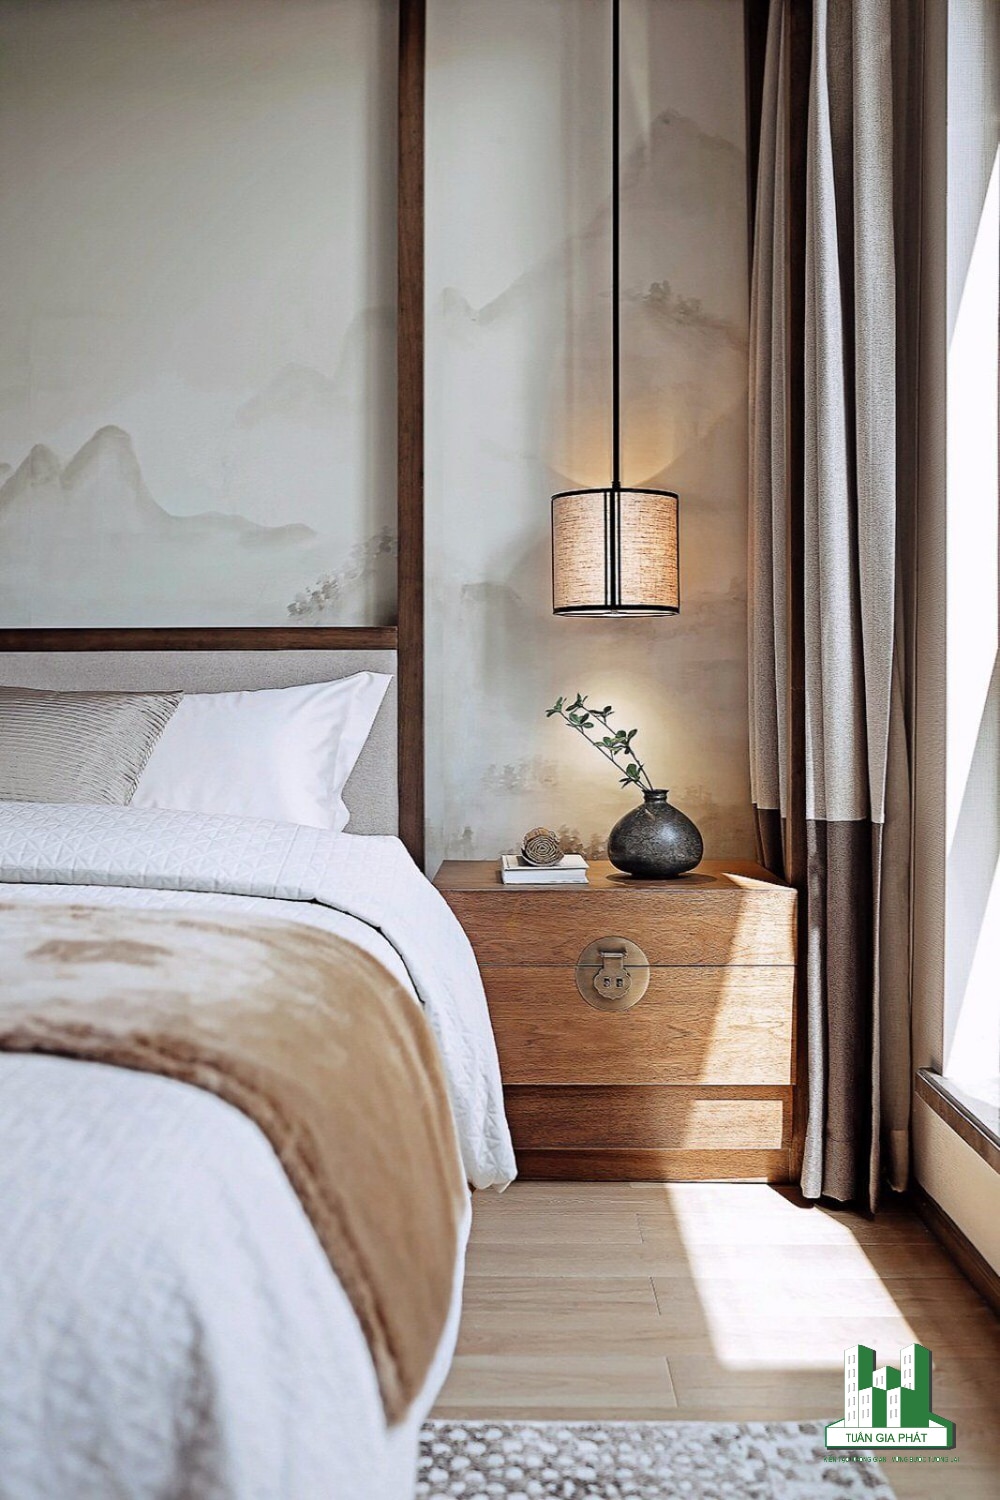 Phòng ngủ trung tính sang trọng với các mảng núi trên tường, đầu giường bằng gỗ, đèn thả trần và rèm cửa rõ nét hai khối màu - tất cả tạo nên sự hài hòa nhẹ nhàng.